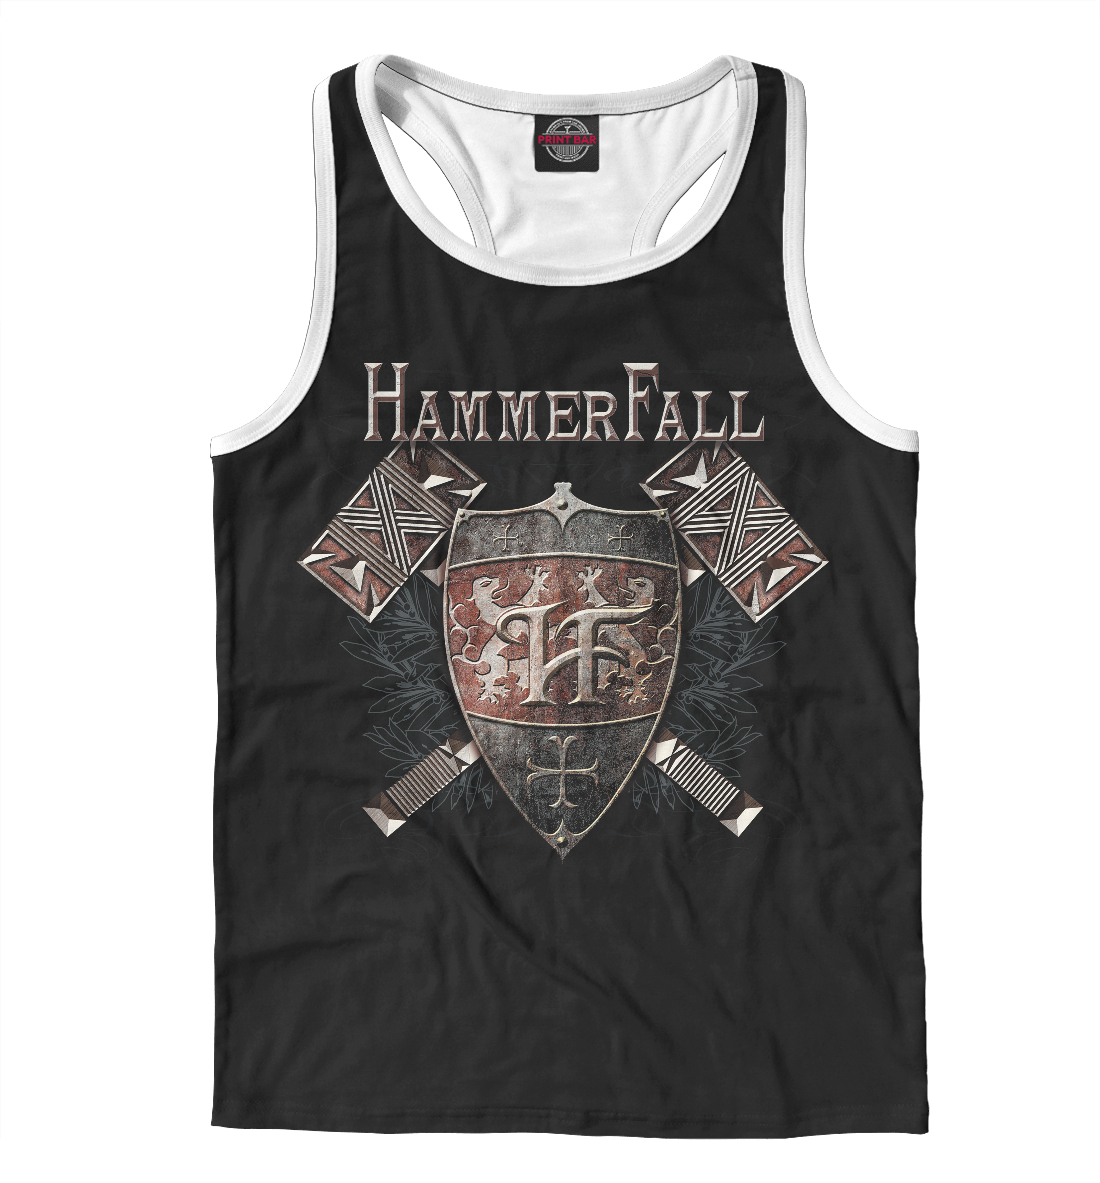 

Hammerfall